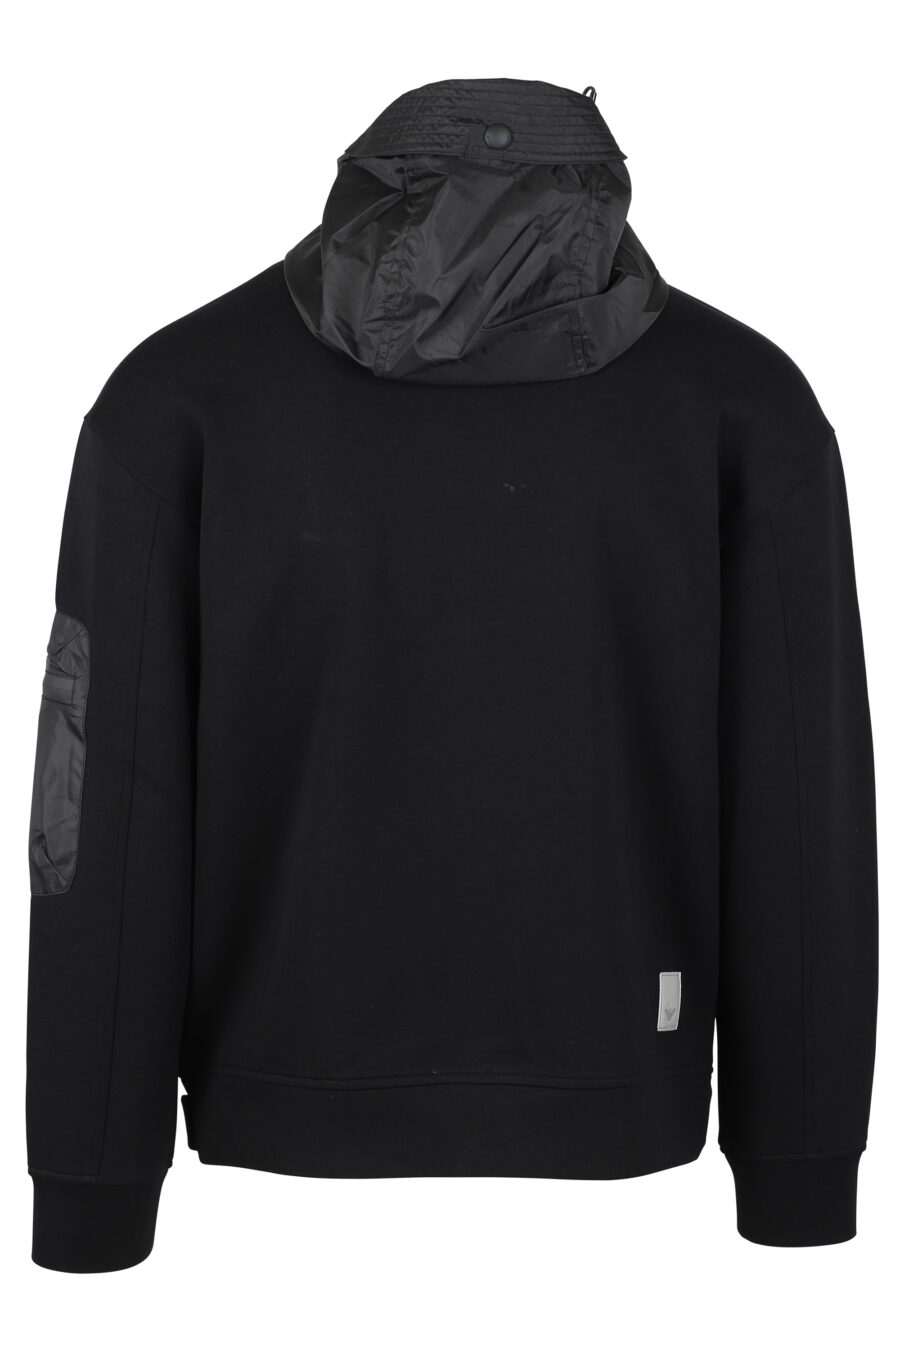 Schwarzes Sweatshirt mit Reißverschluss, Seitentasche und Mini-Logo - IMG 4697